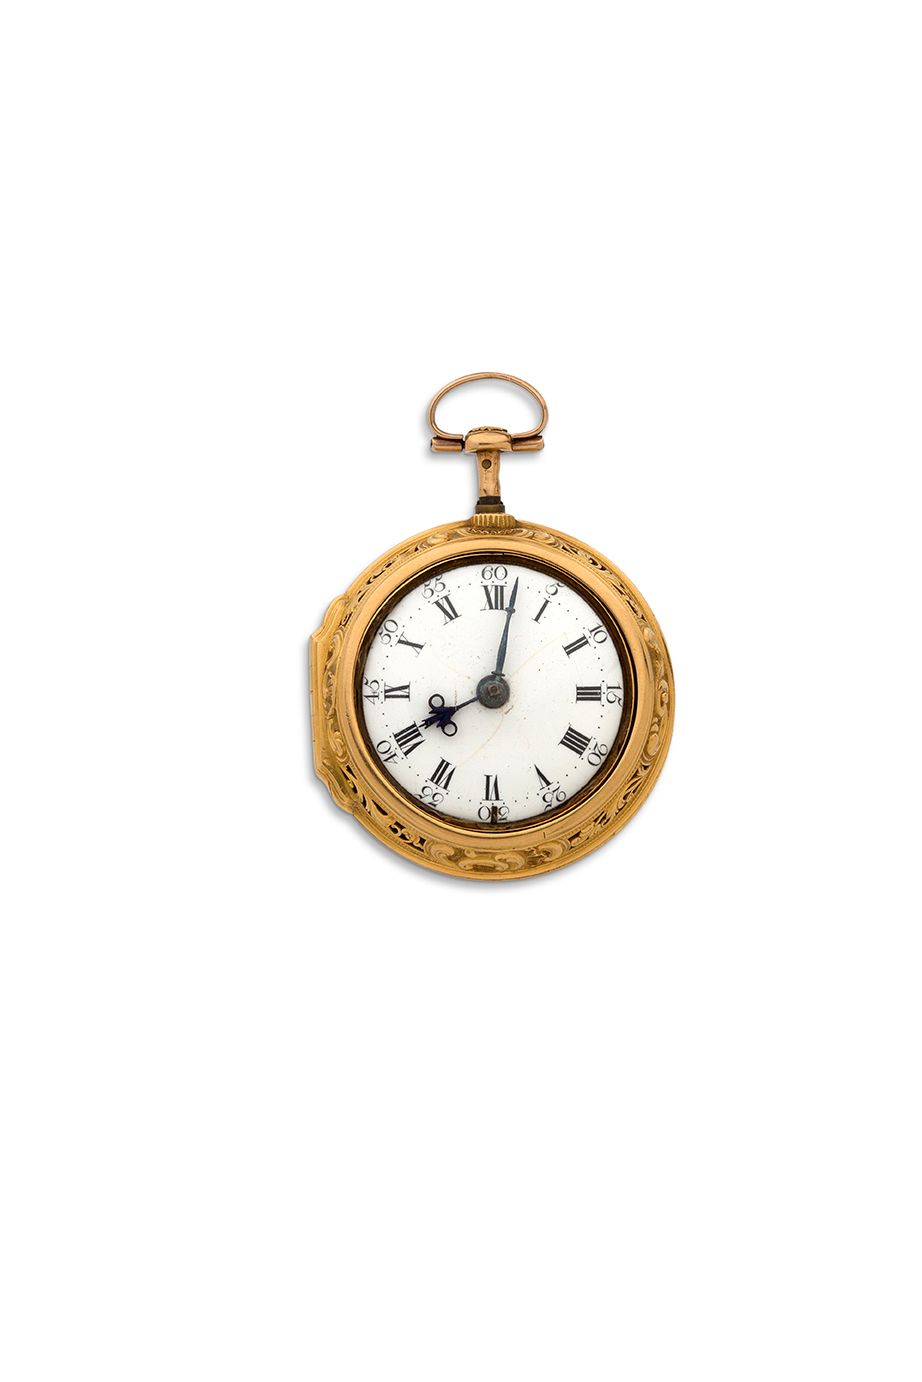 JAMES HUBERT, London 
Reloj de oro con repetición de cuartos, caja doble en reli&hellip;